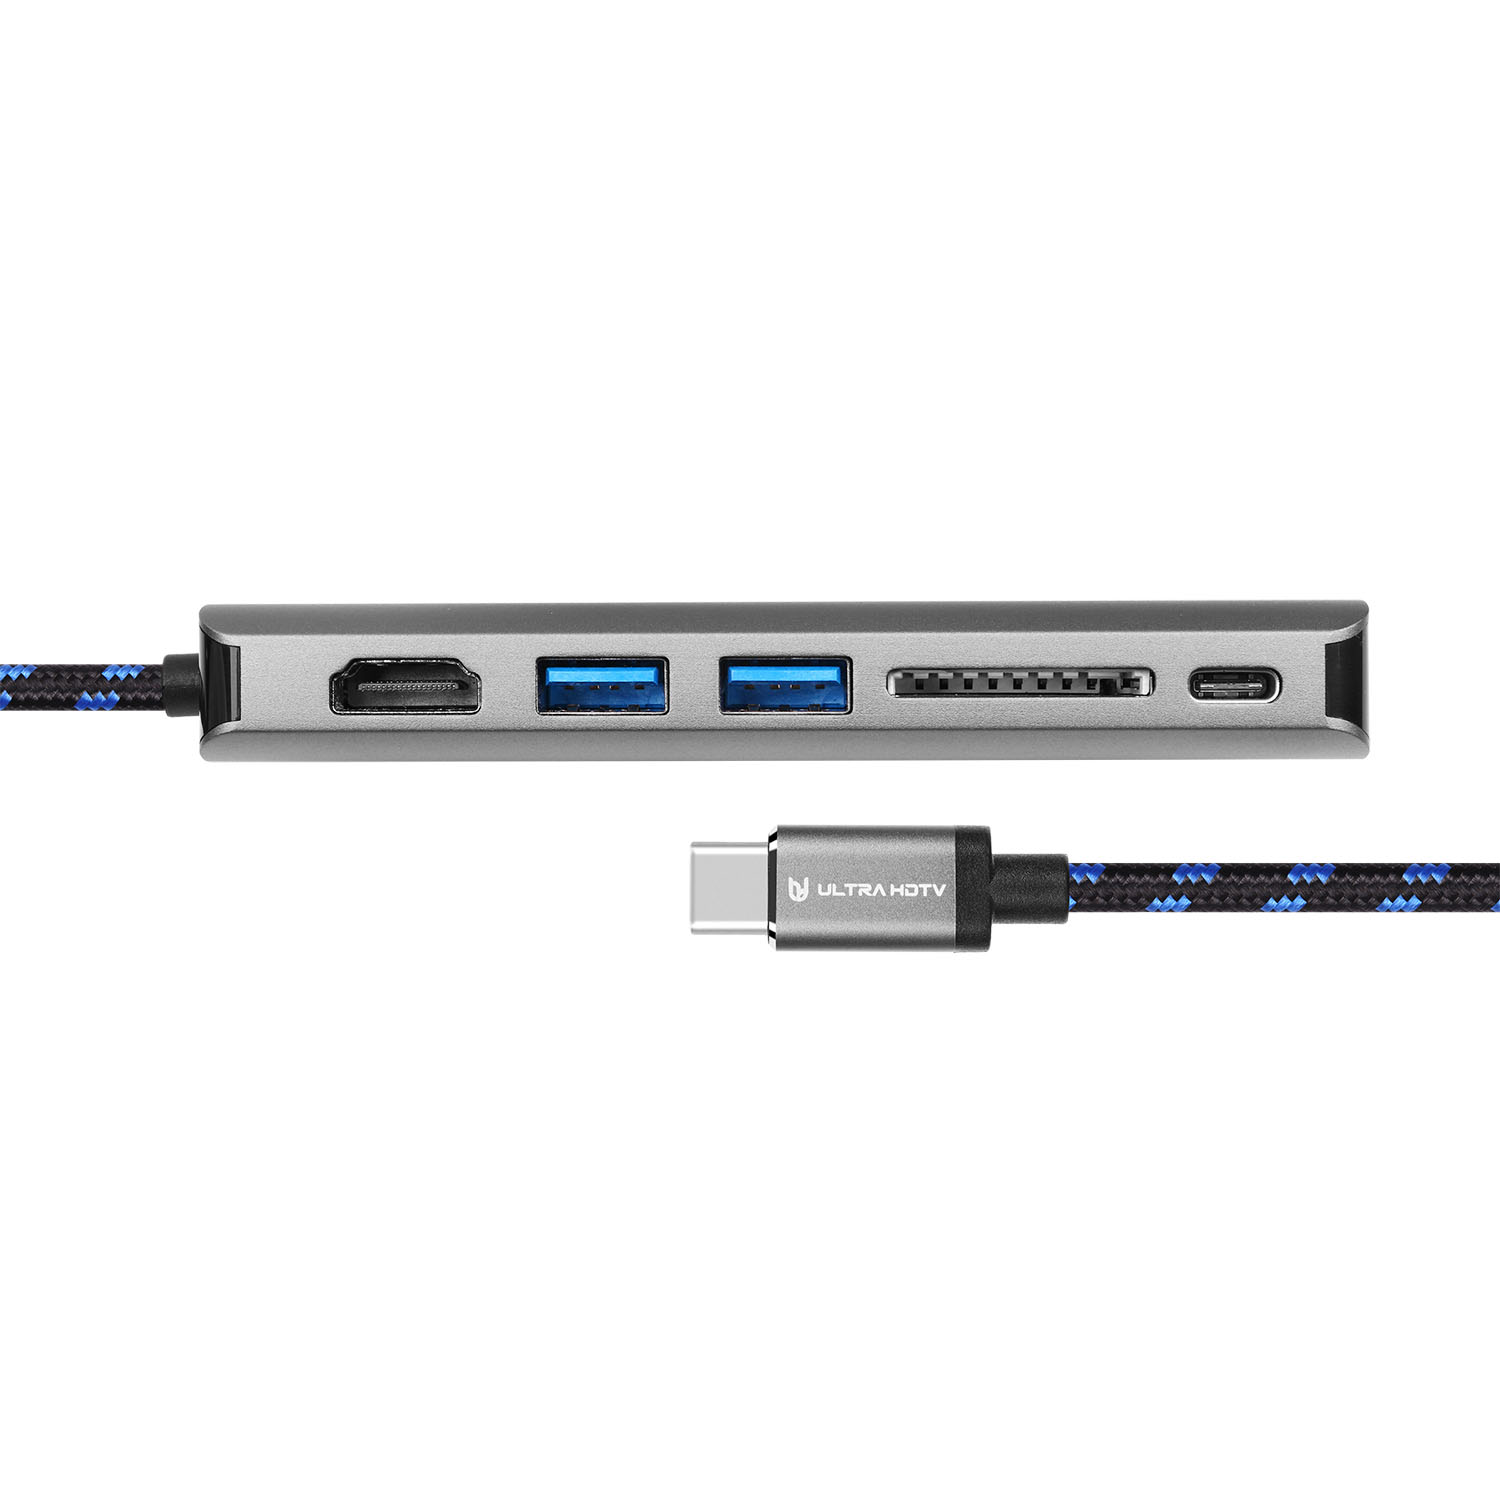 Grau edler - Datenhub HDTV Typ-C Hub, USB-C Multifunktions-Hub USB-C ULTRA